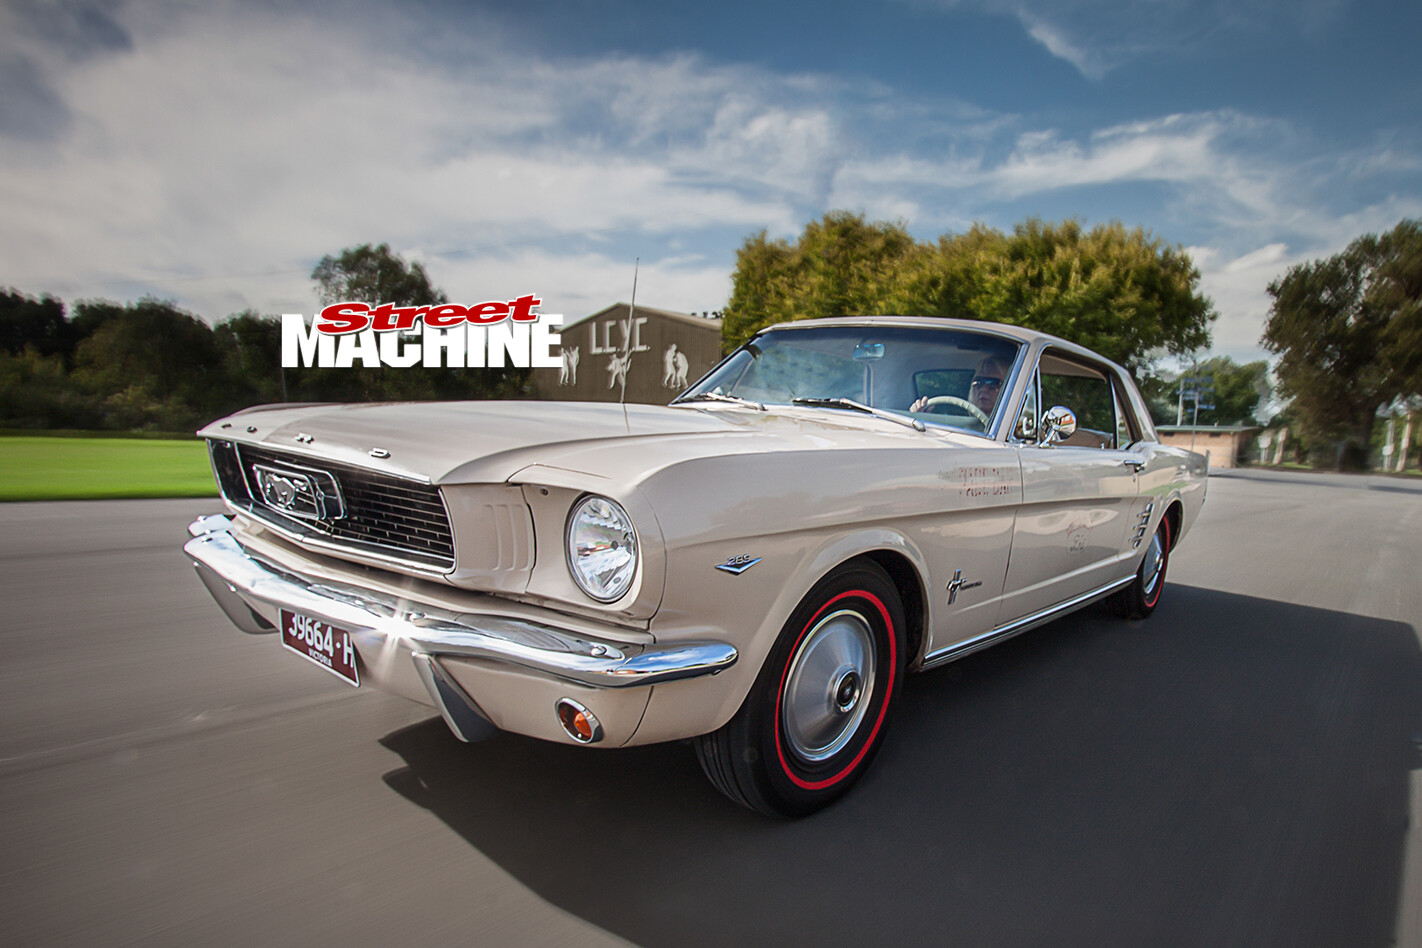 Nicole -Bridge -1966-Mustang -onroad